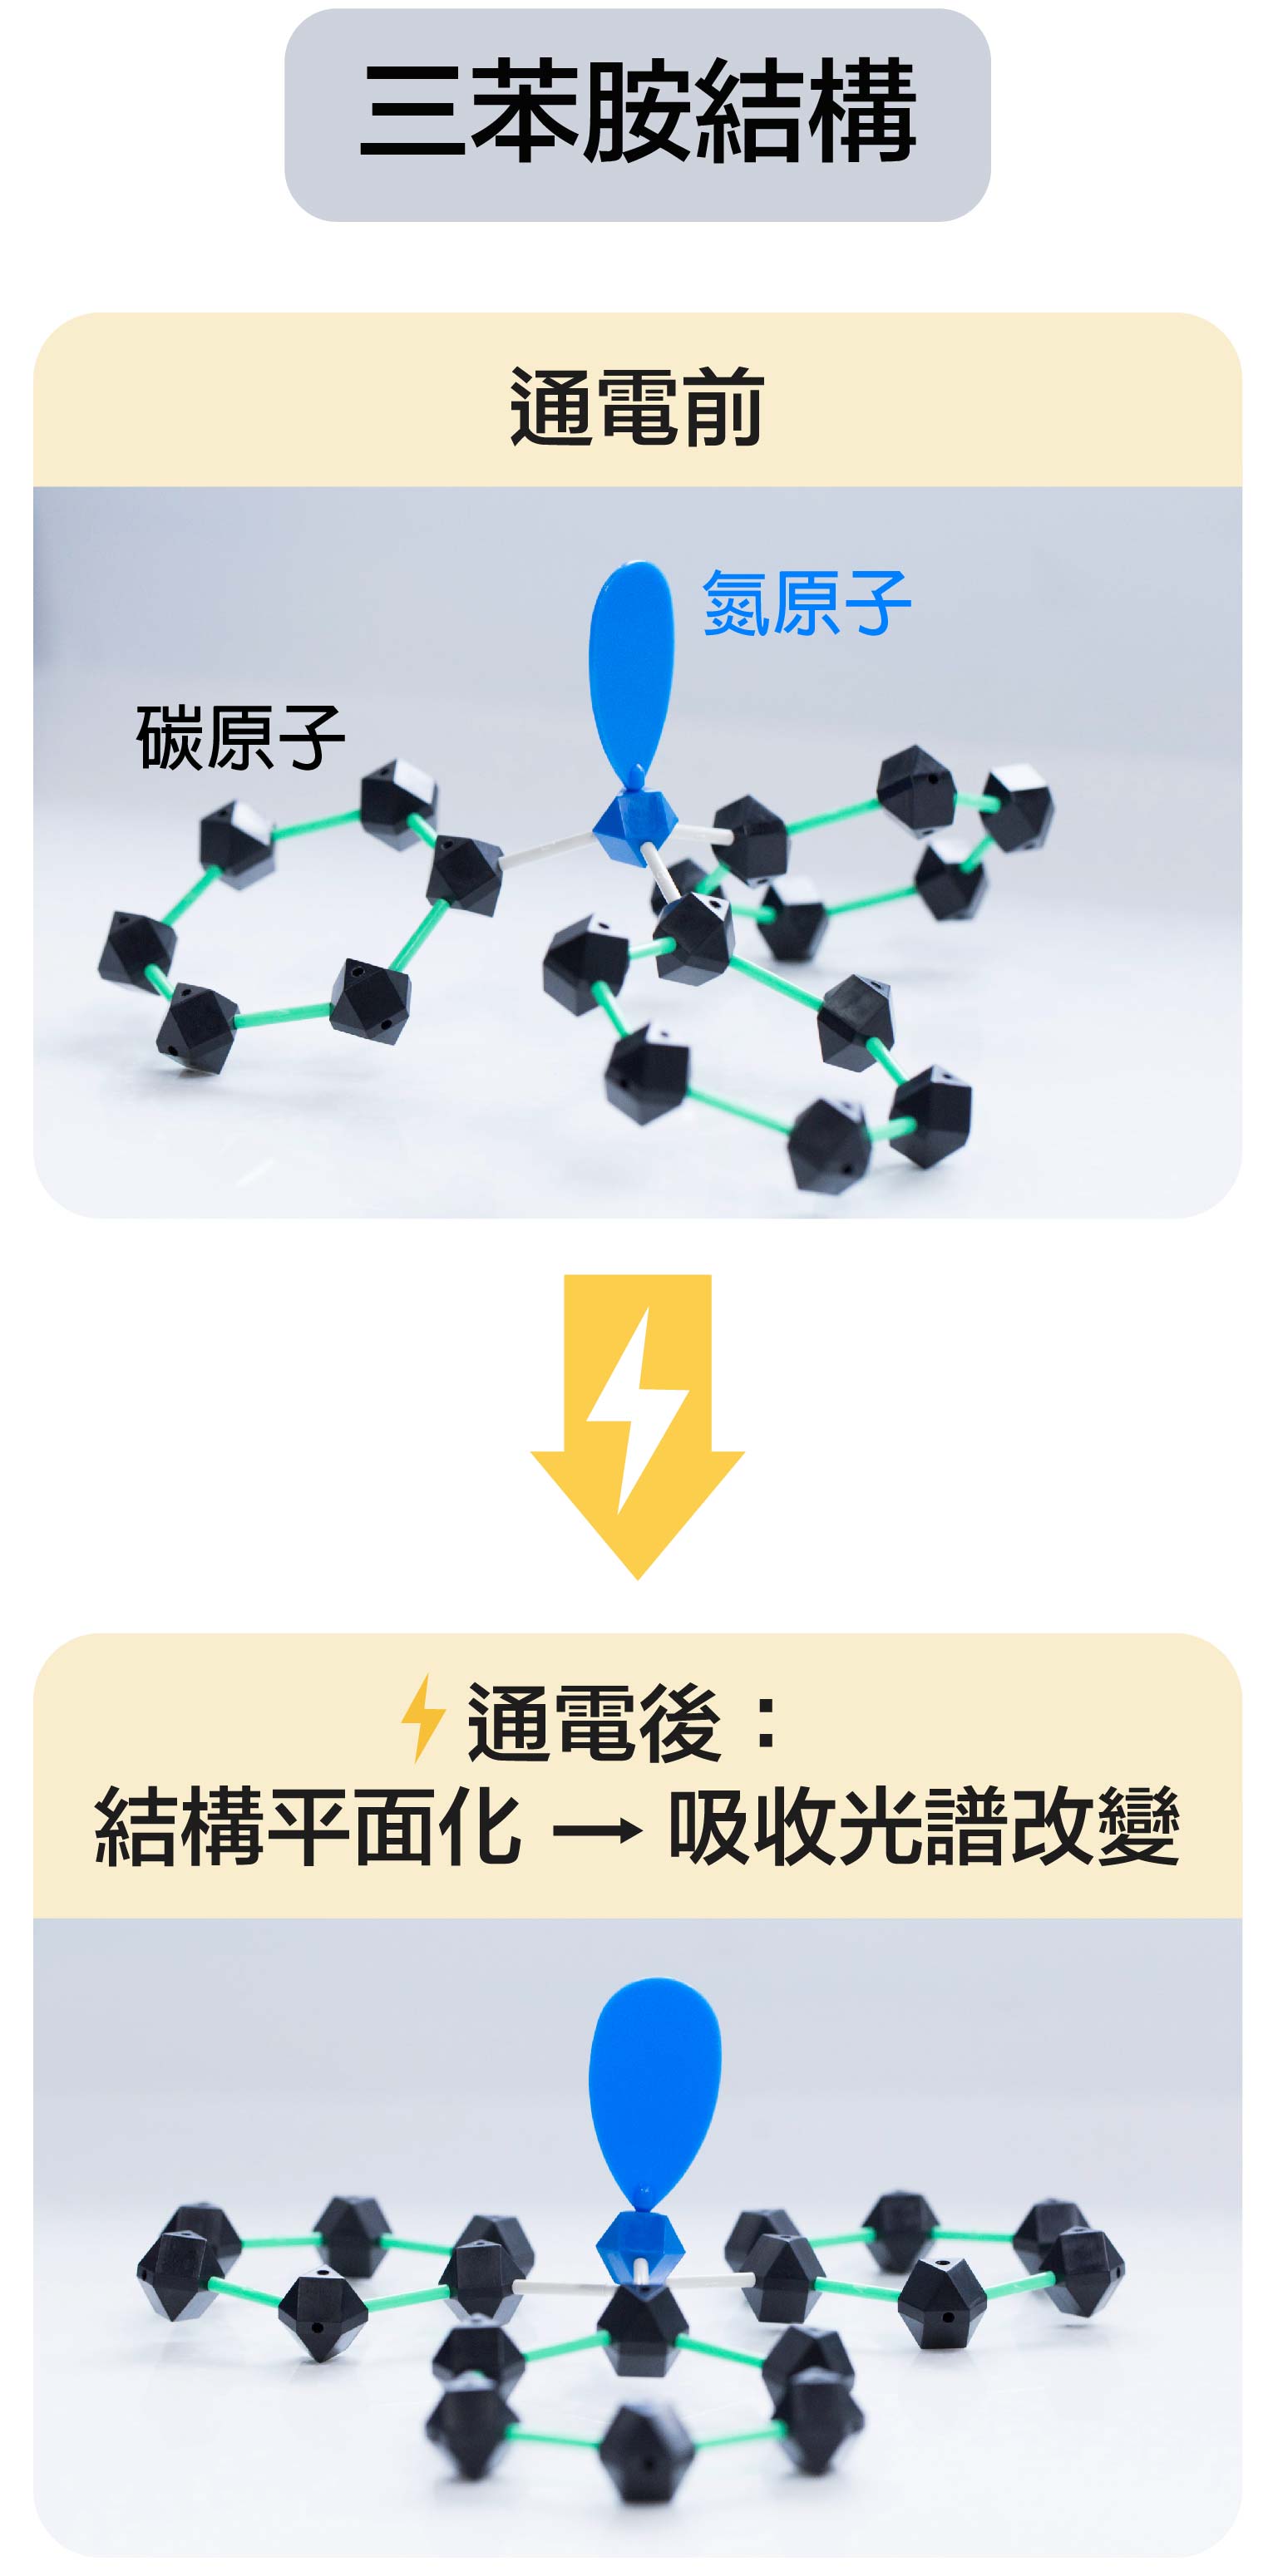 三苯胺結構，通電後的變化。模型示意│顏宏儒 圖說設計│林婷嫻、林洵安